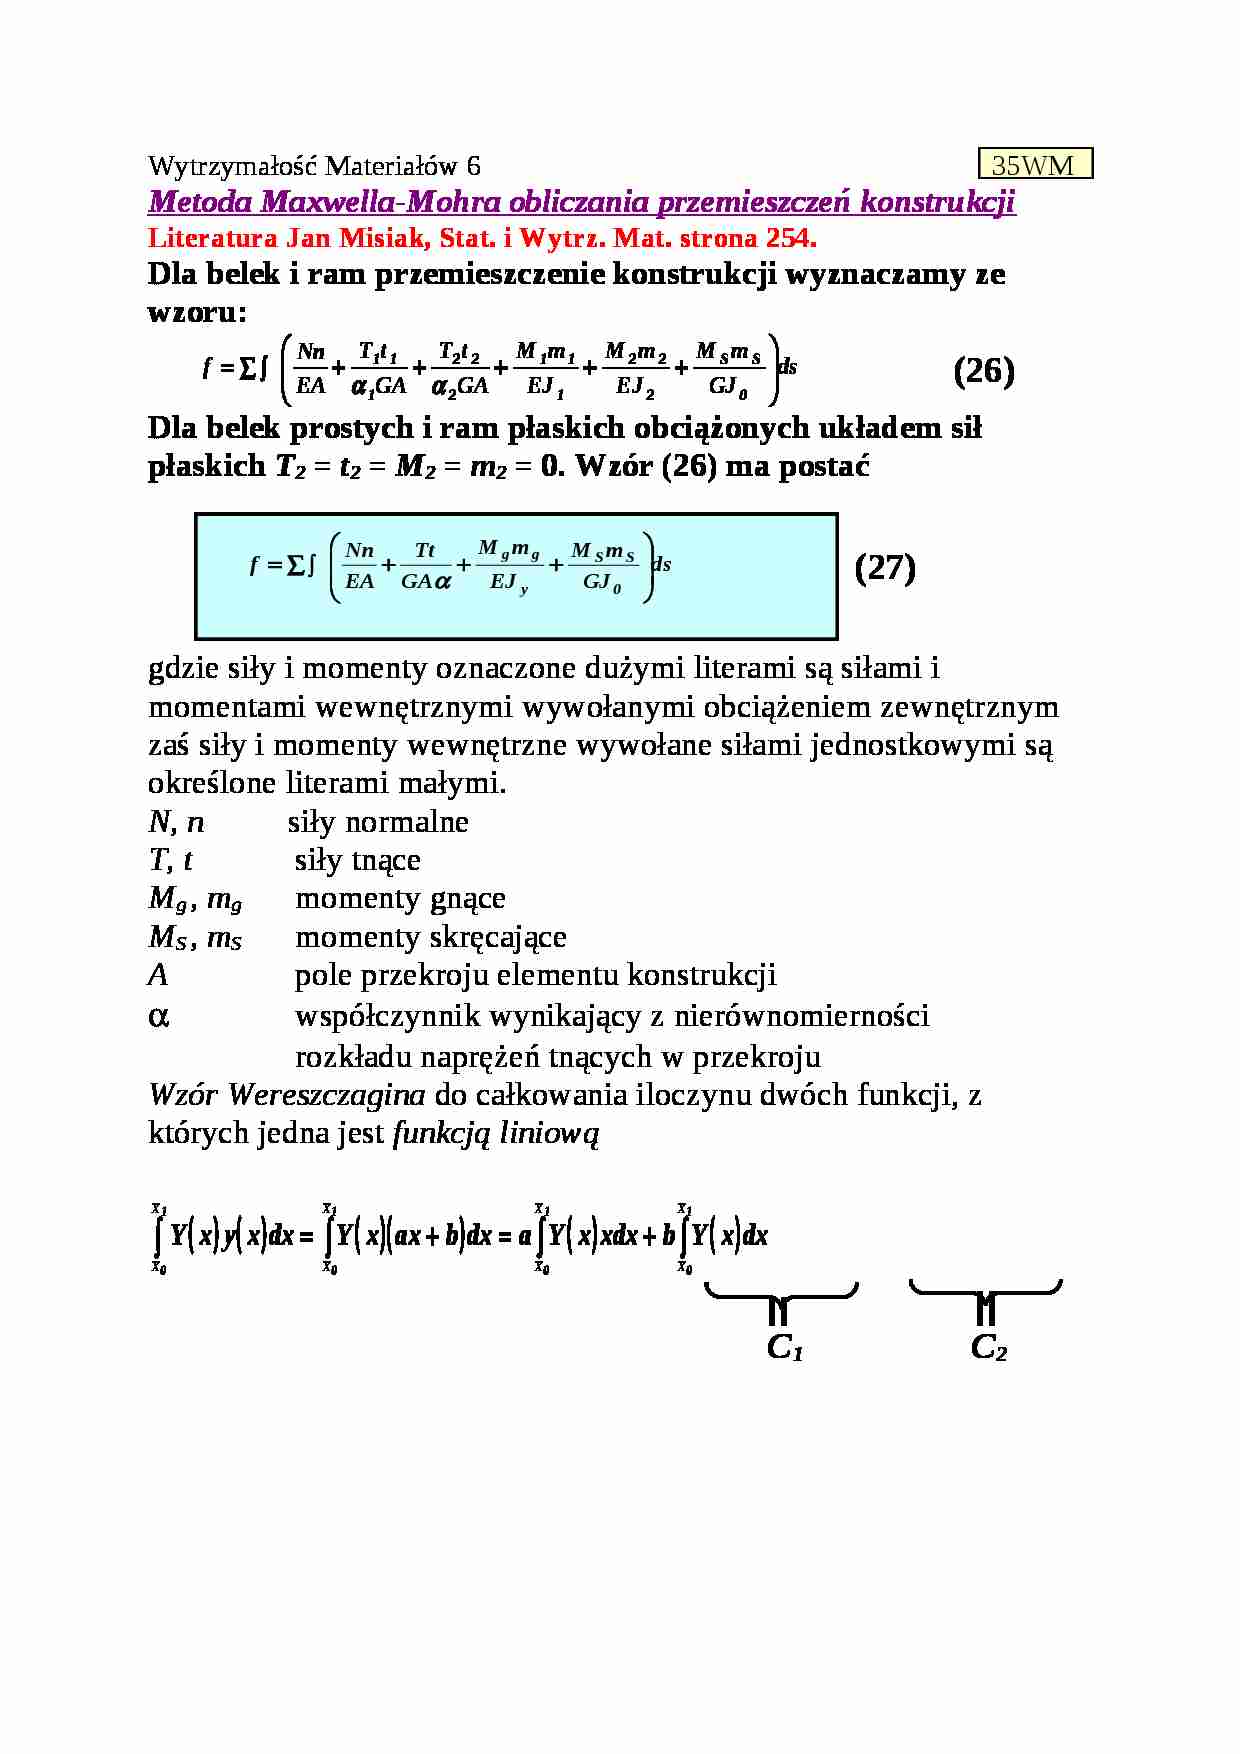 Metoda Maxwella-Mohra obliczania przemieszczeń konstrukcji 6 - strona 1